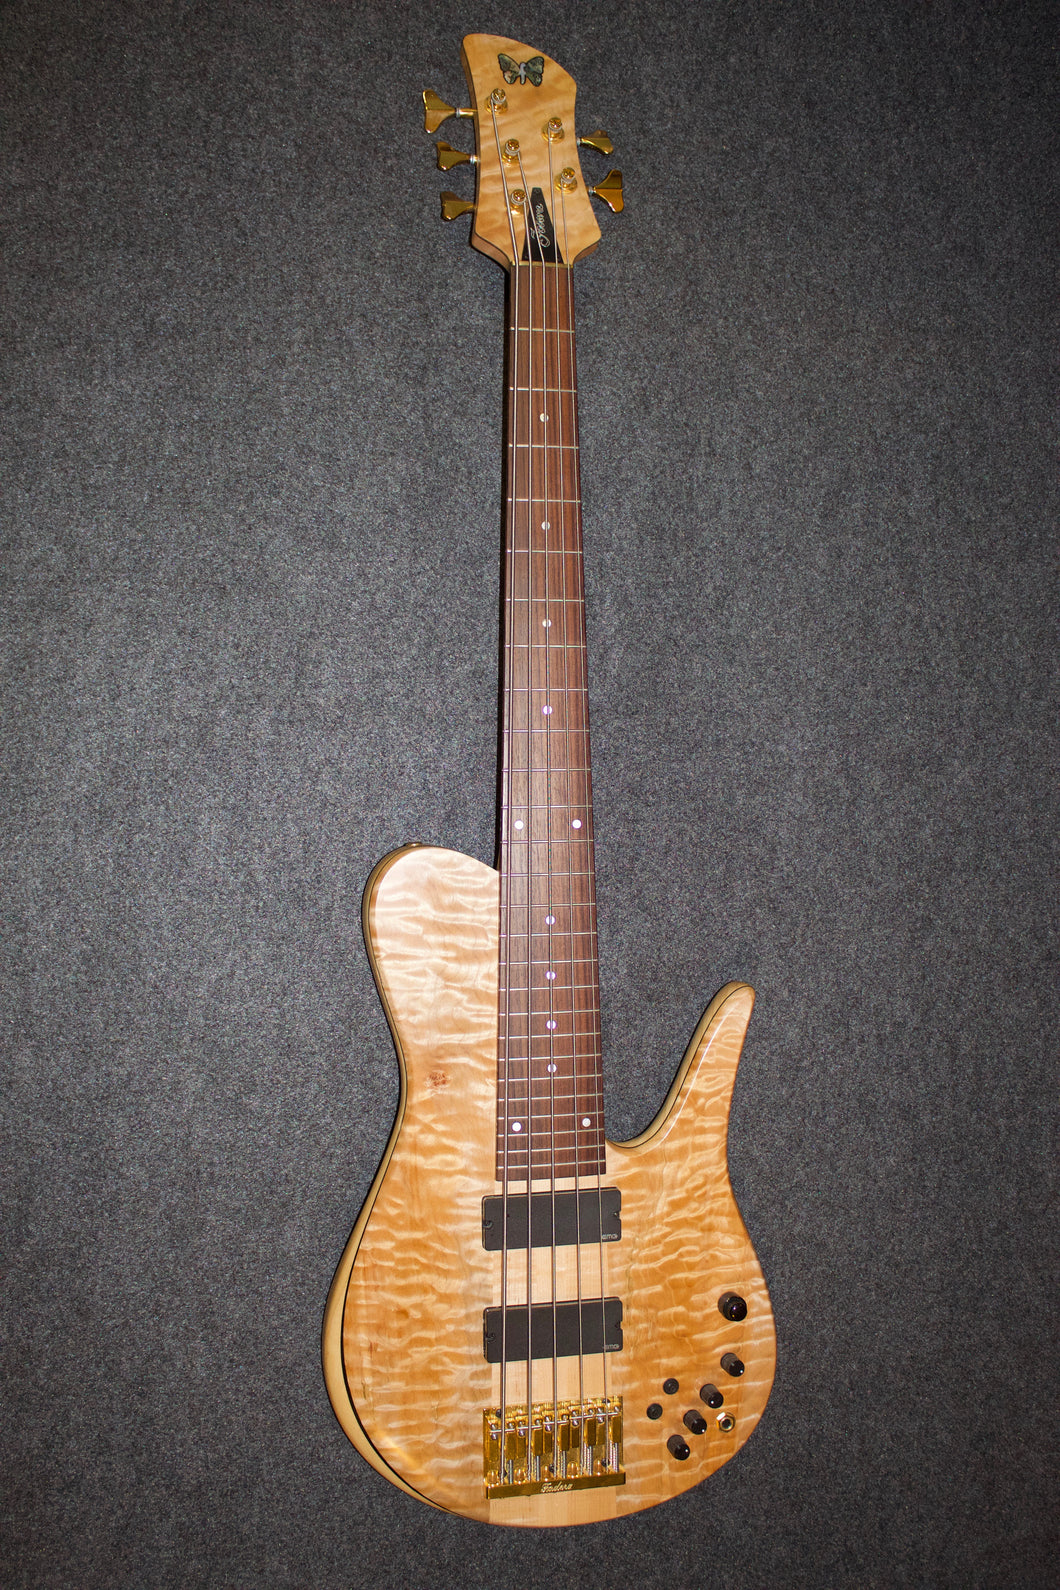 Fodera Matt Garrison model quilted Maple 5 string bass